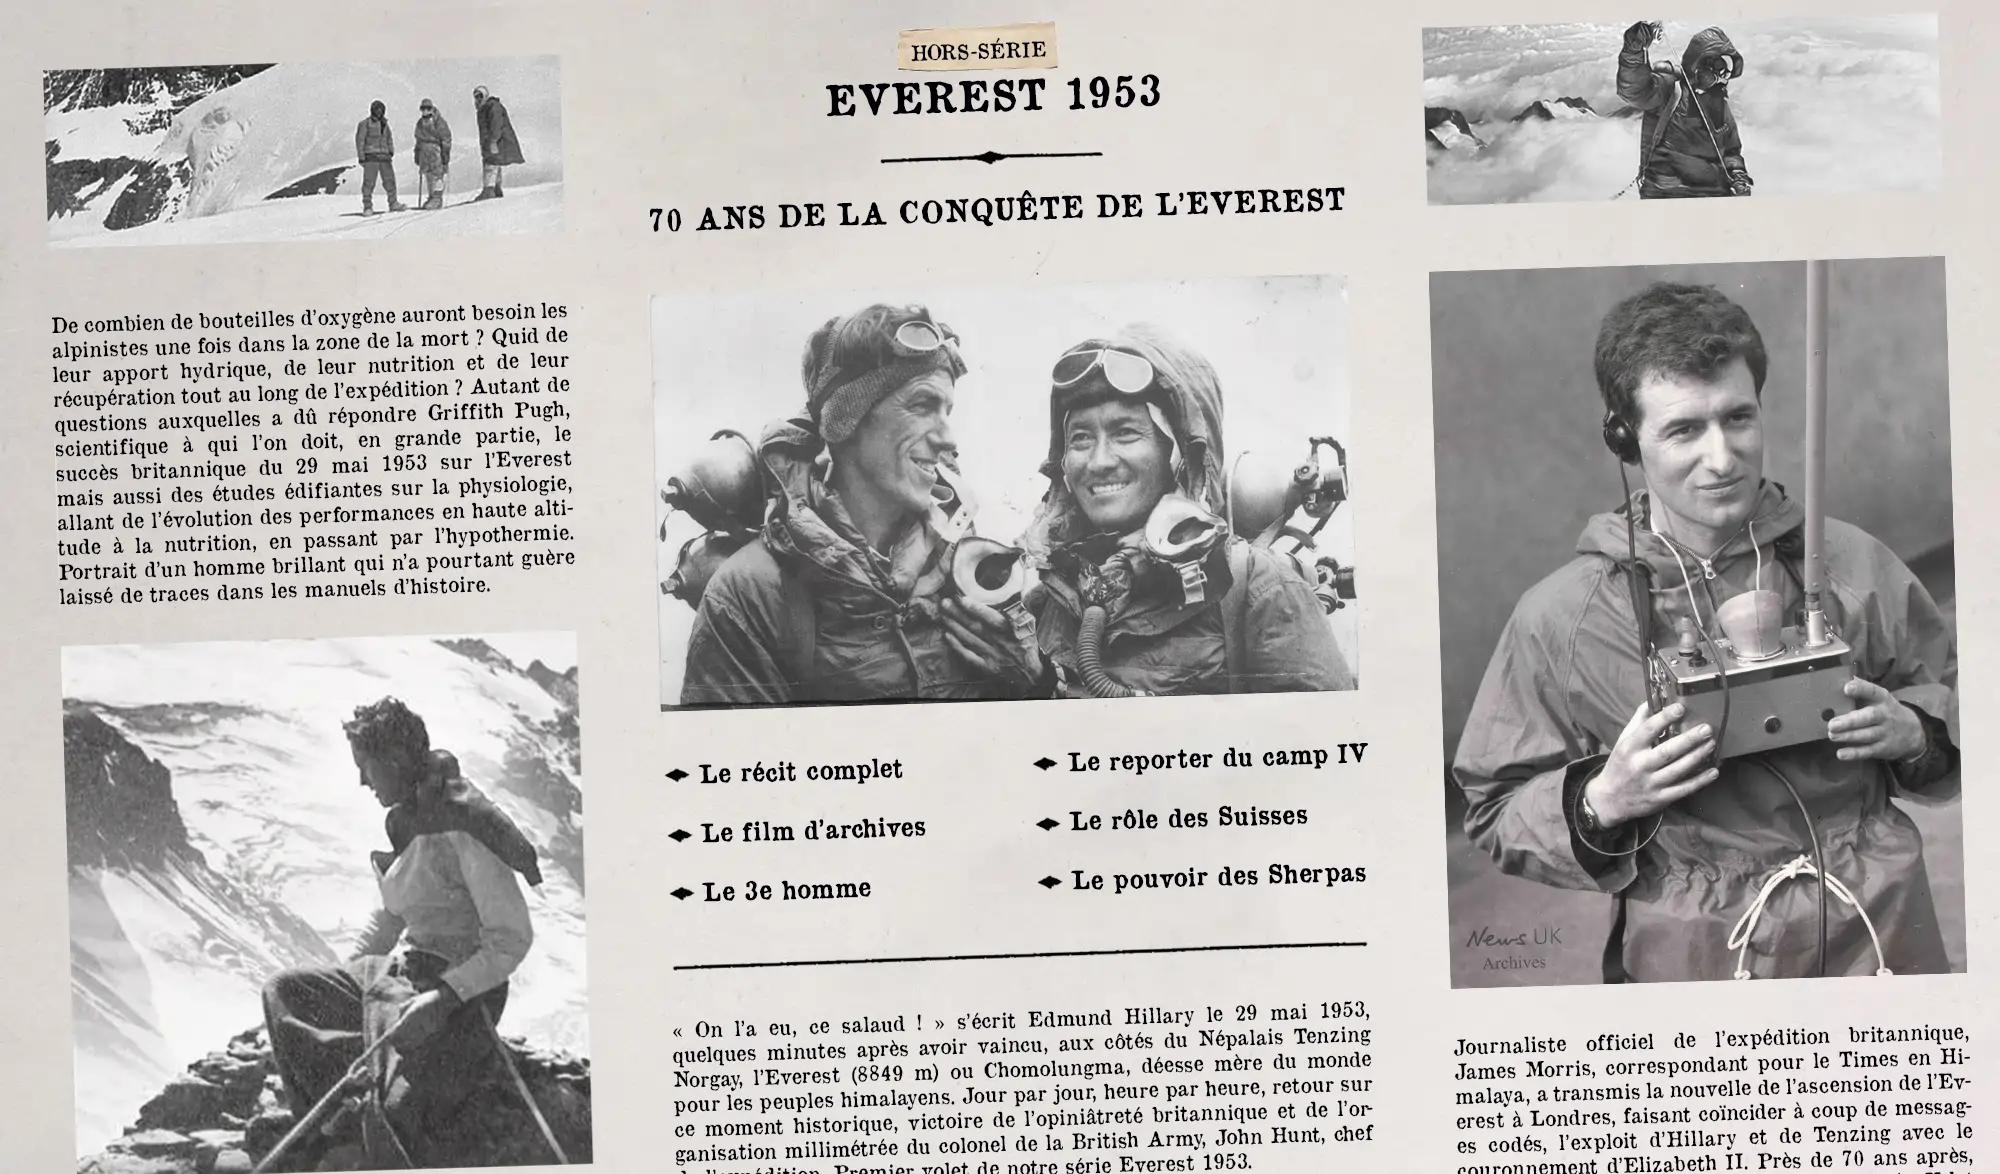 HORS-SÉRIE] Les 70 ans de la conquête de l'Everest